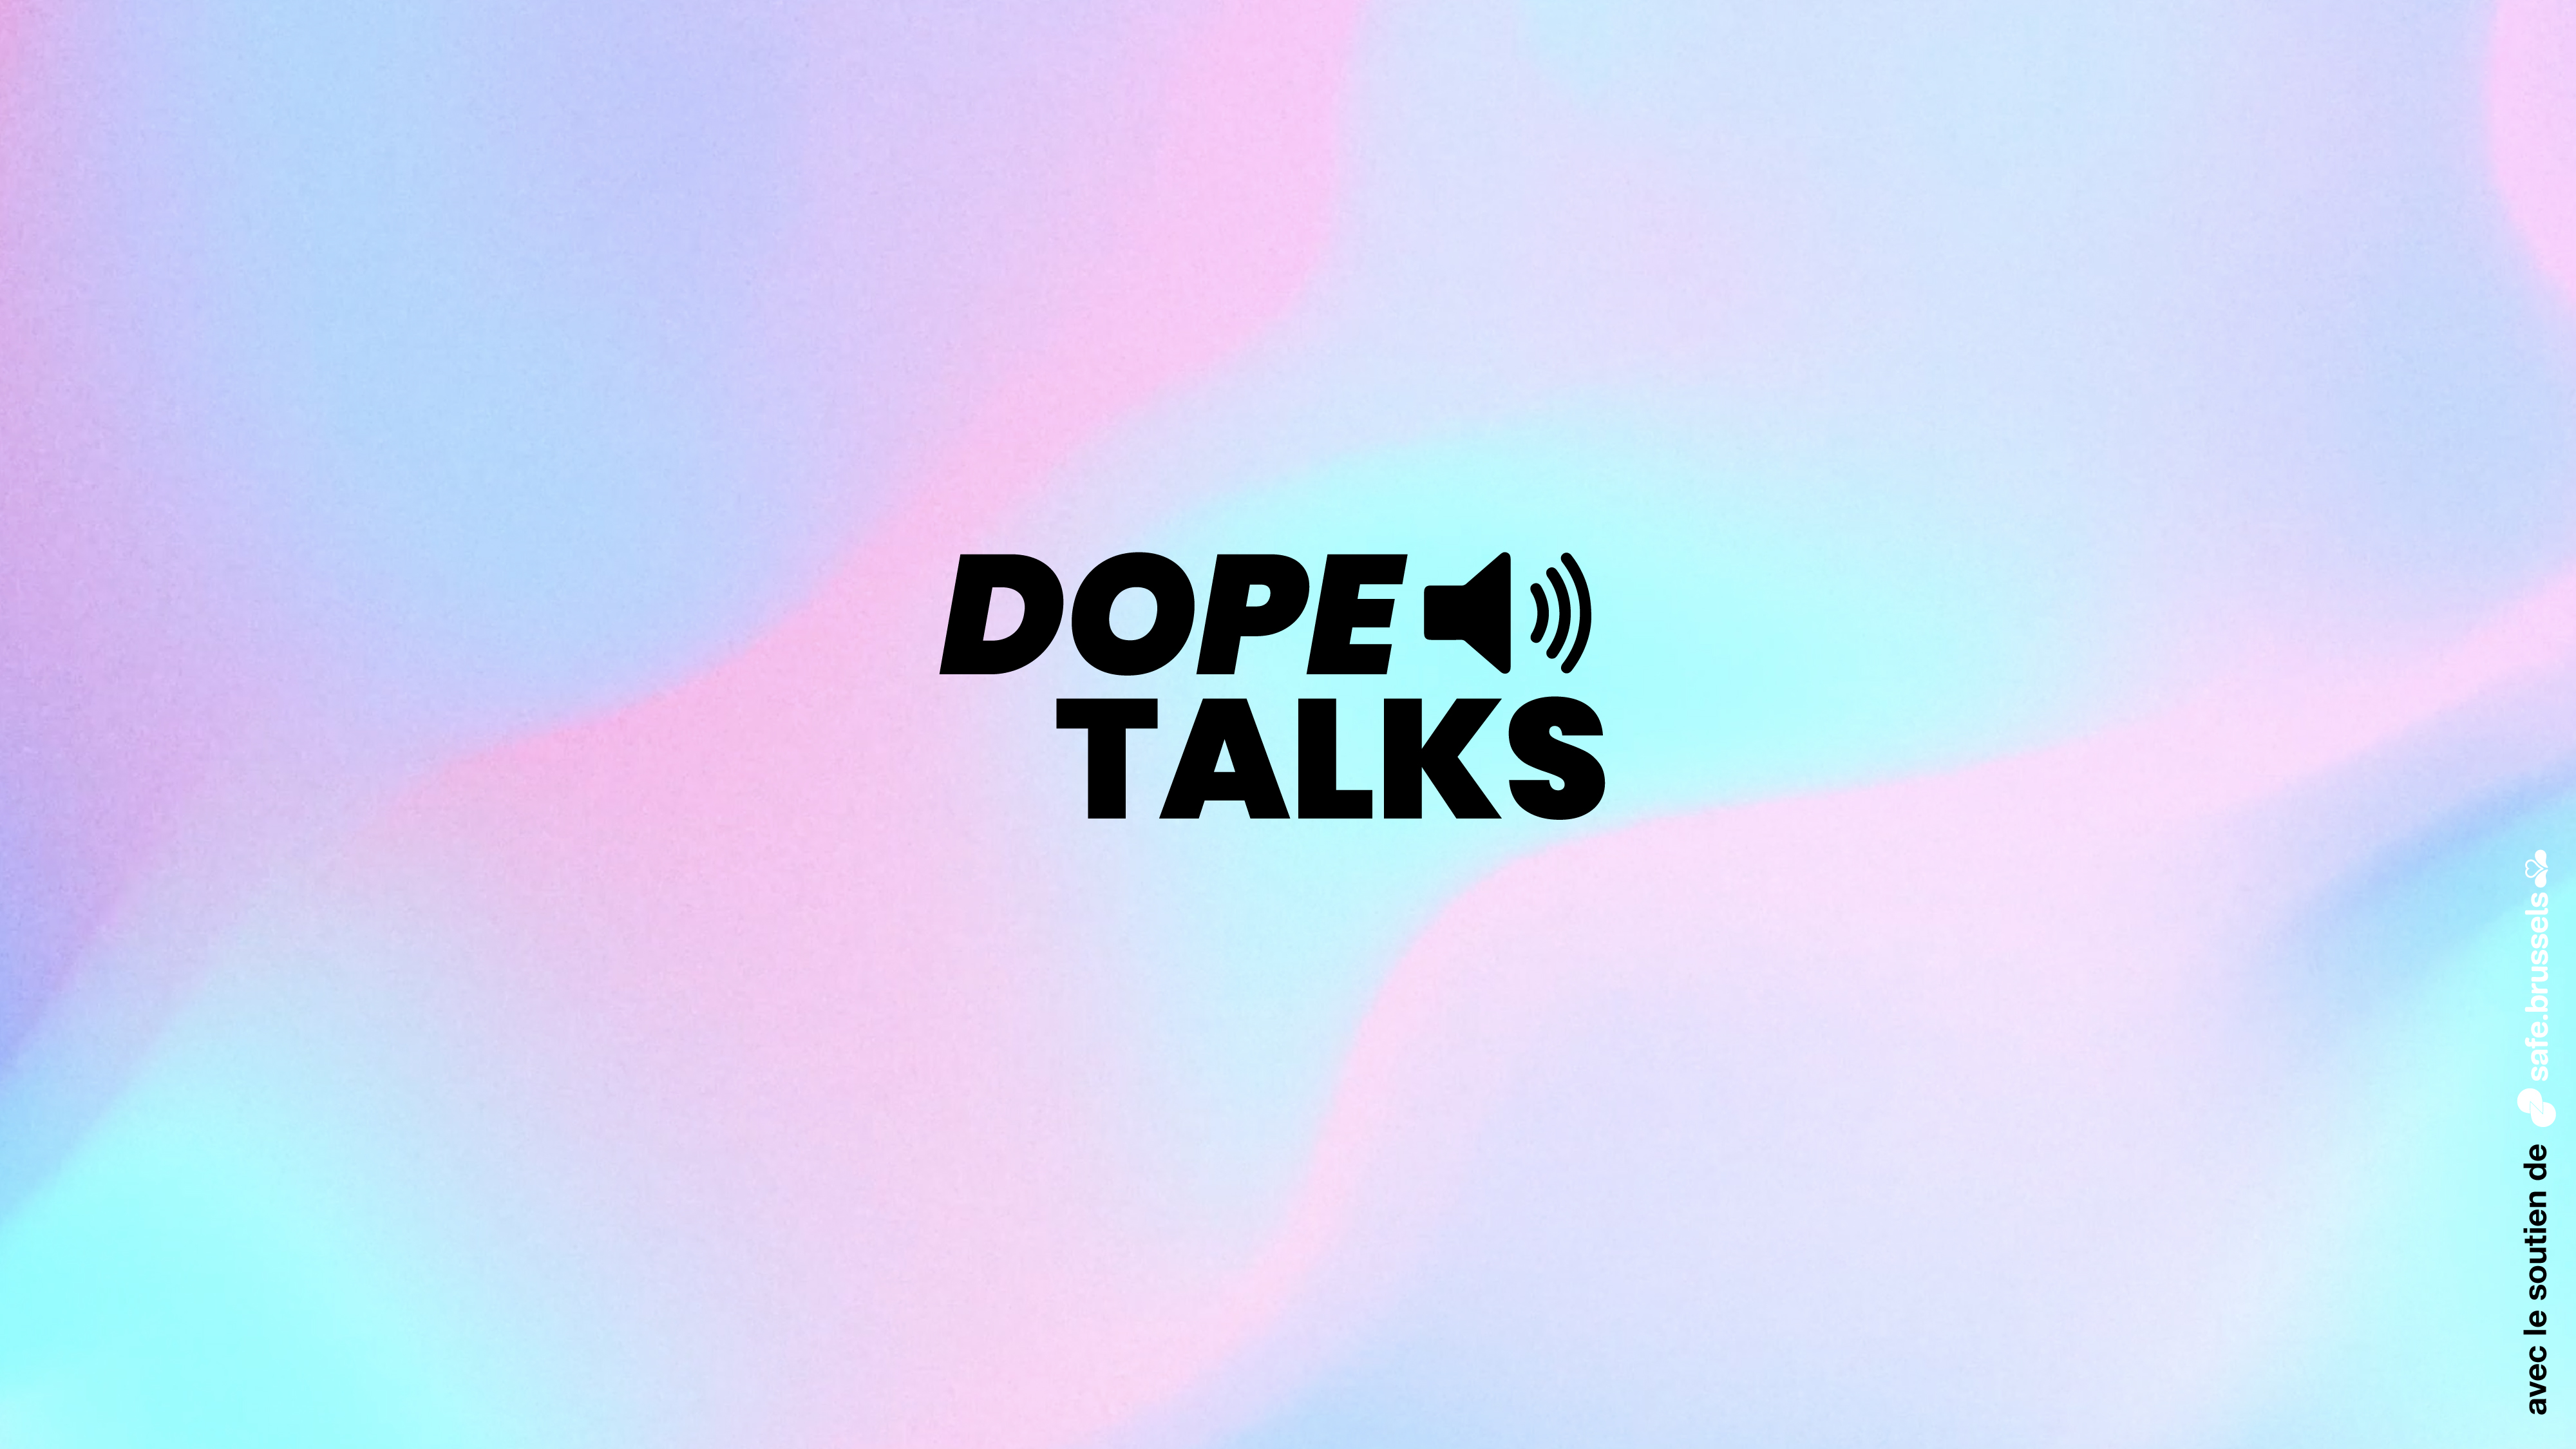 Dope Talks - een geslaagde campagne met 1.635.662 impressies